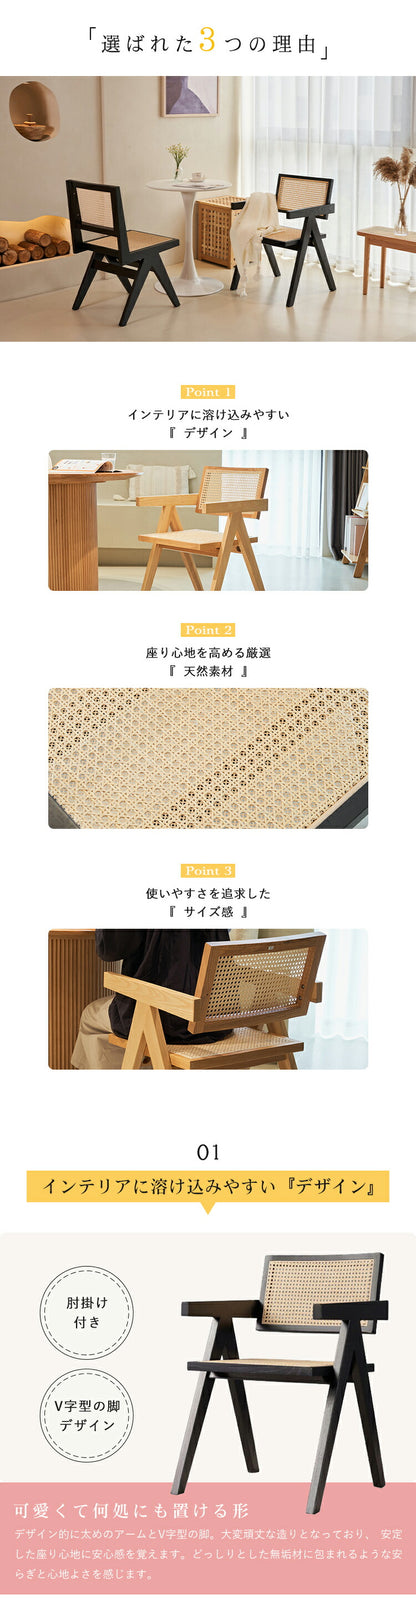 ラタンチェア 籐編み椅子 幅48/52cm カフェチェア sx-480